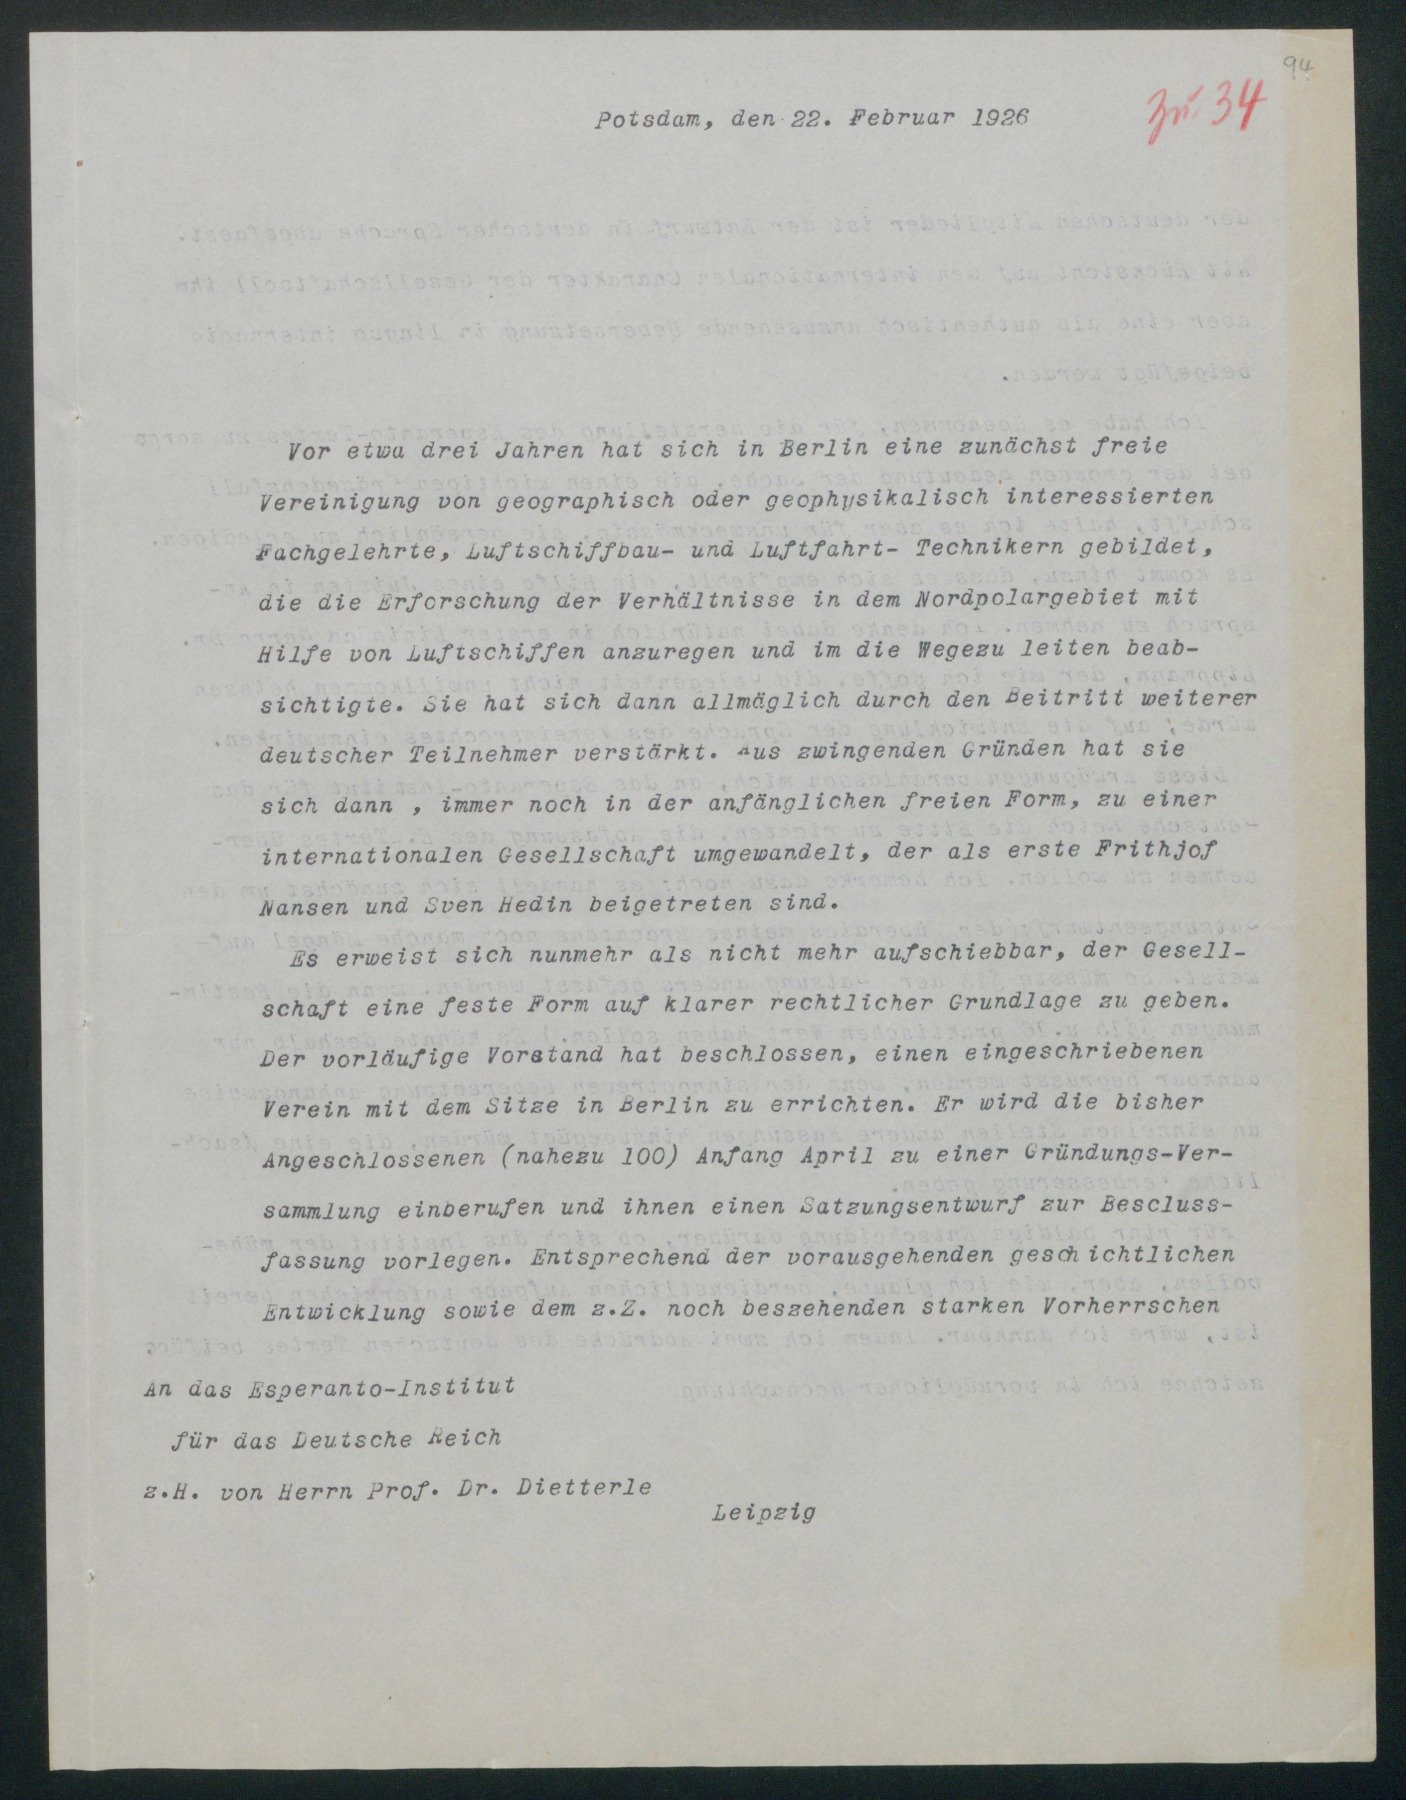 Anschreiben an die Esperanto-Gesellschaft des Deutschen Reiches (Wettermuseum CC BY-NC-SA)